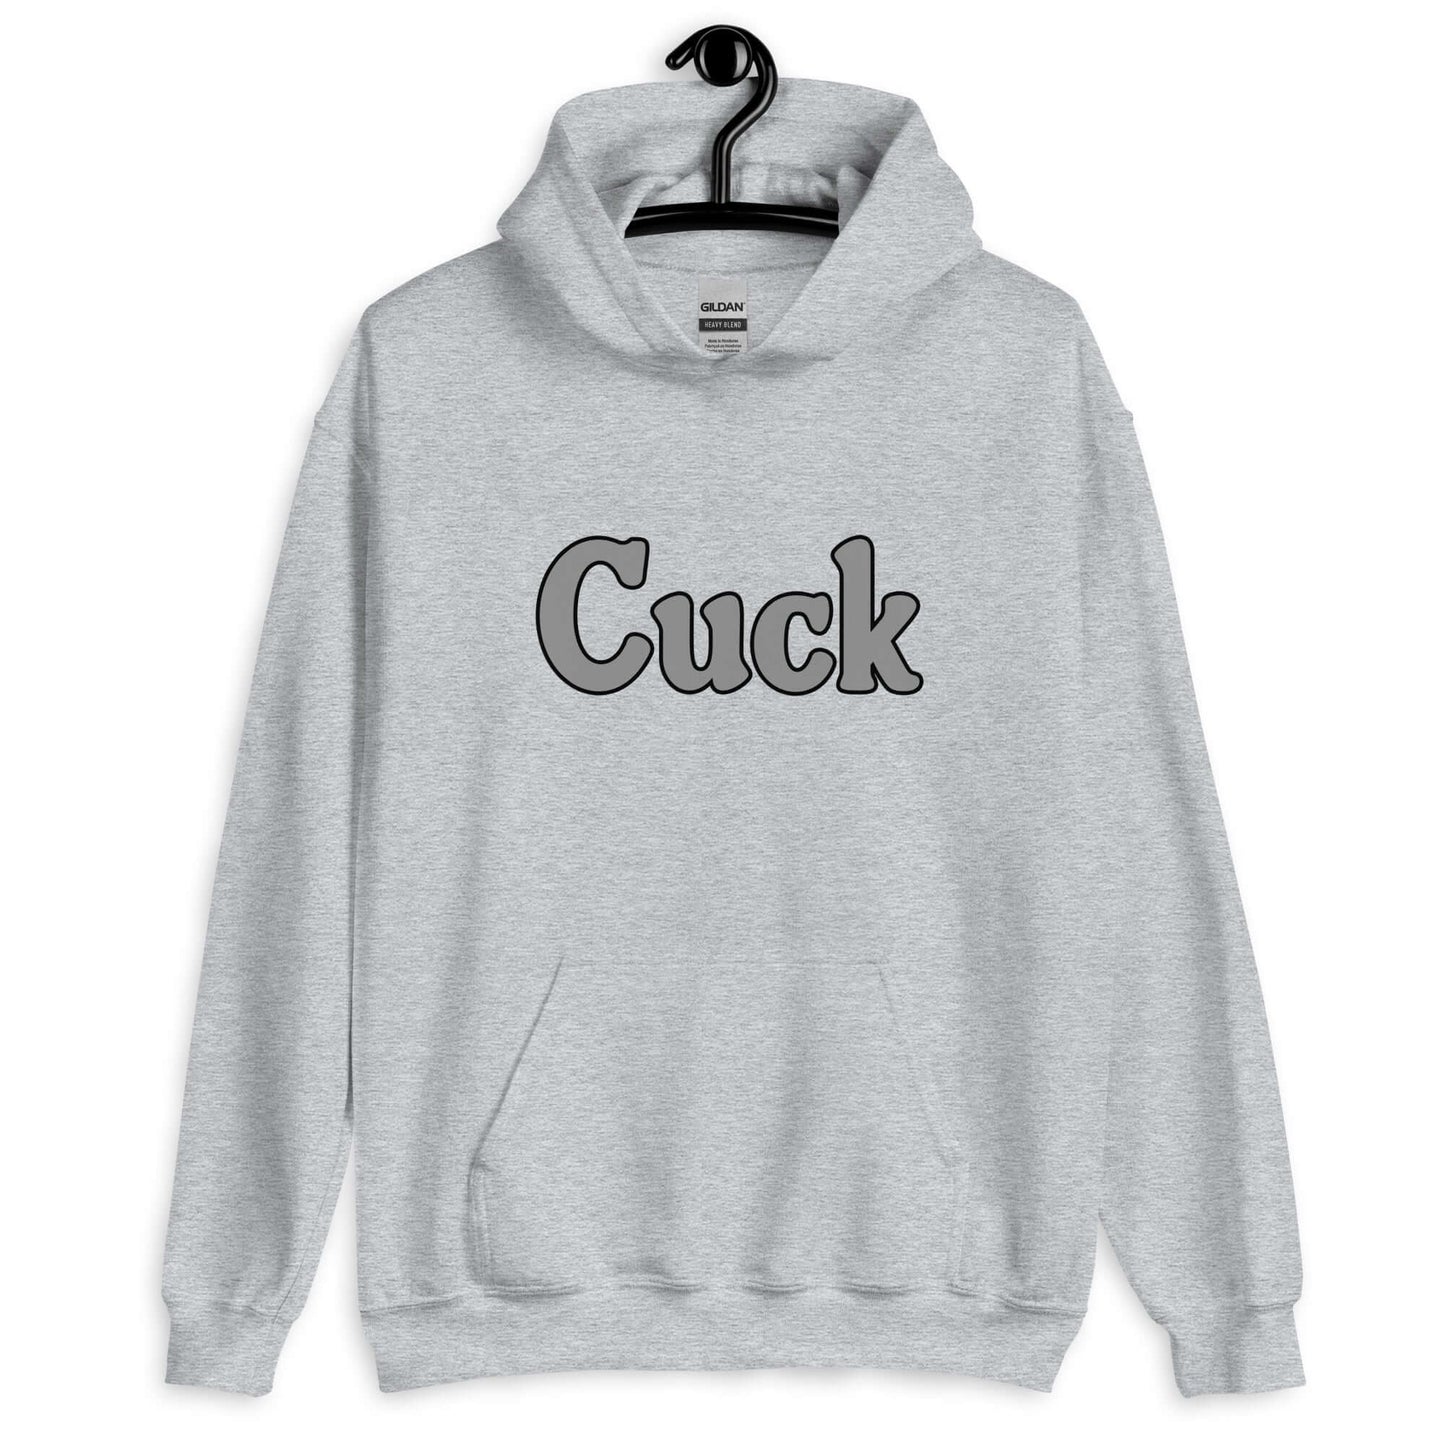 Cuck hoodie hooded sweatshirt